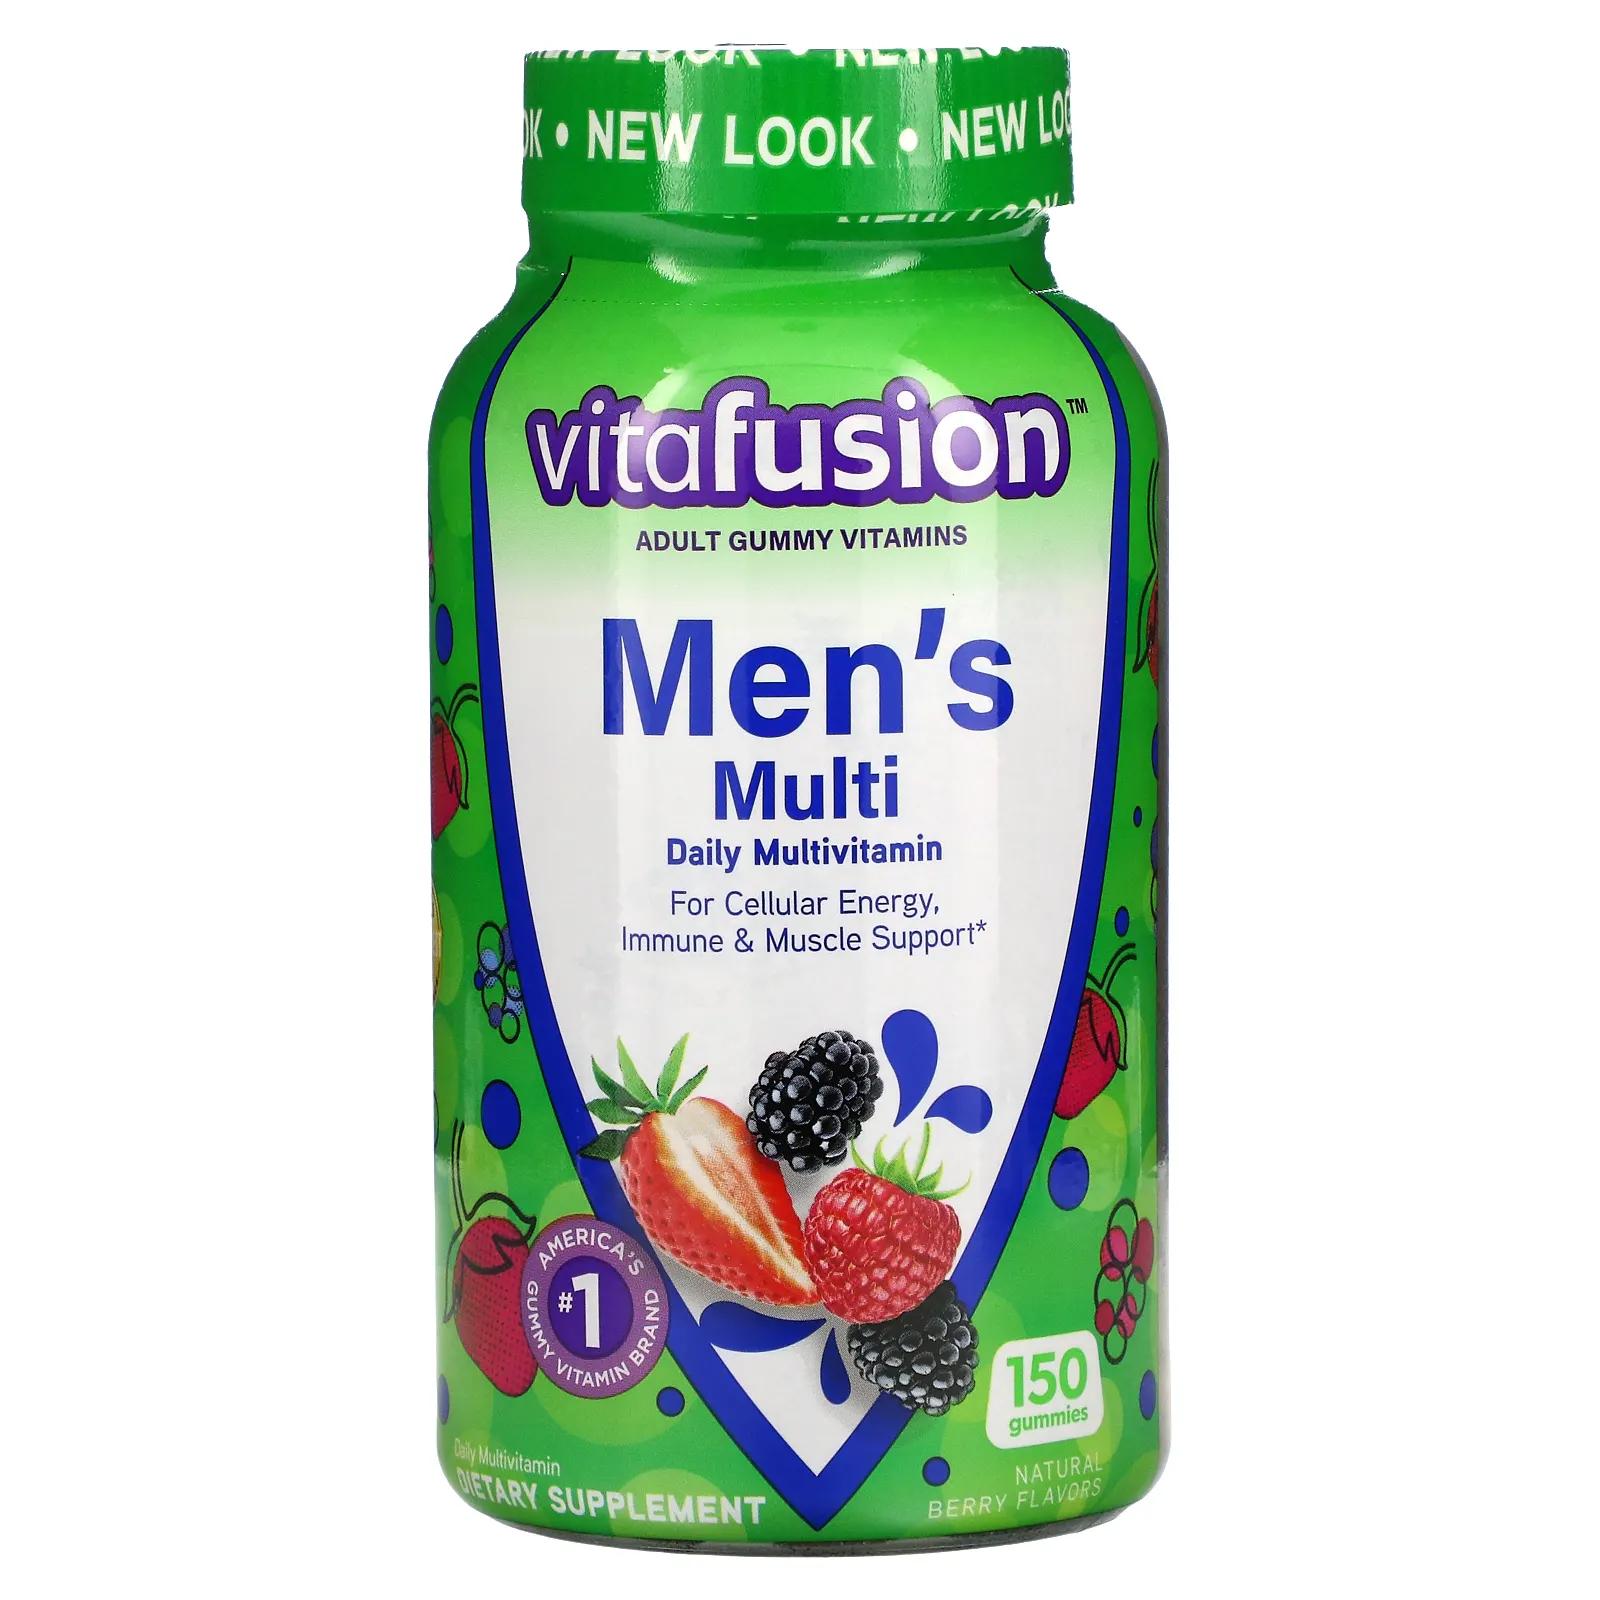 VitaFusion Комплексные мультивитамины для мужчин натуральные ягодные вкусы 150 жевательных таблеток vitafusion жевательные витамины для женщин натуральные ягодные вкусы 150 жевательных таблеток